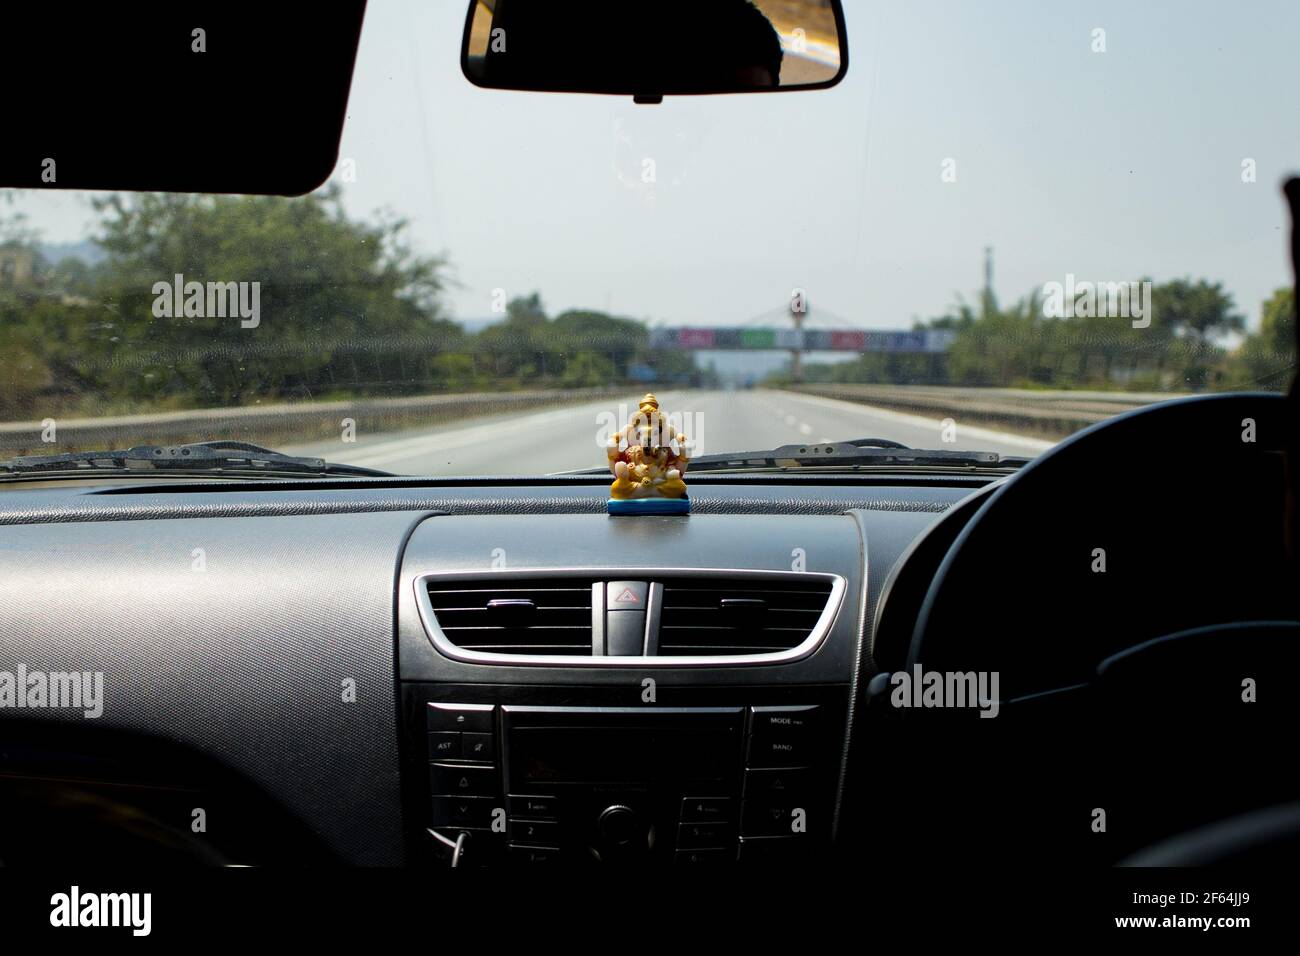 Tableau de bord de voiture avec statue de Ganesha avec voie rapide vide regarder à travers un pare-brise de voiture avec petite statue de dieu sur le tableau de bord le soleil ou le soleil Banque D'Images